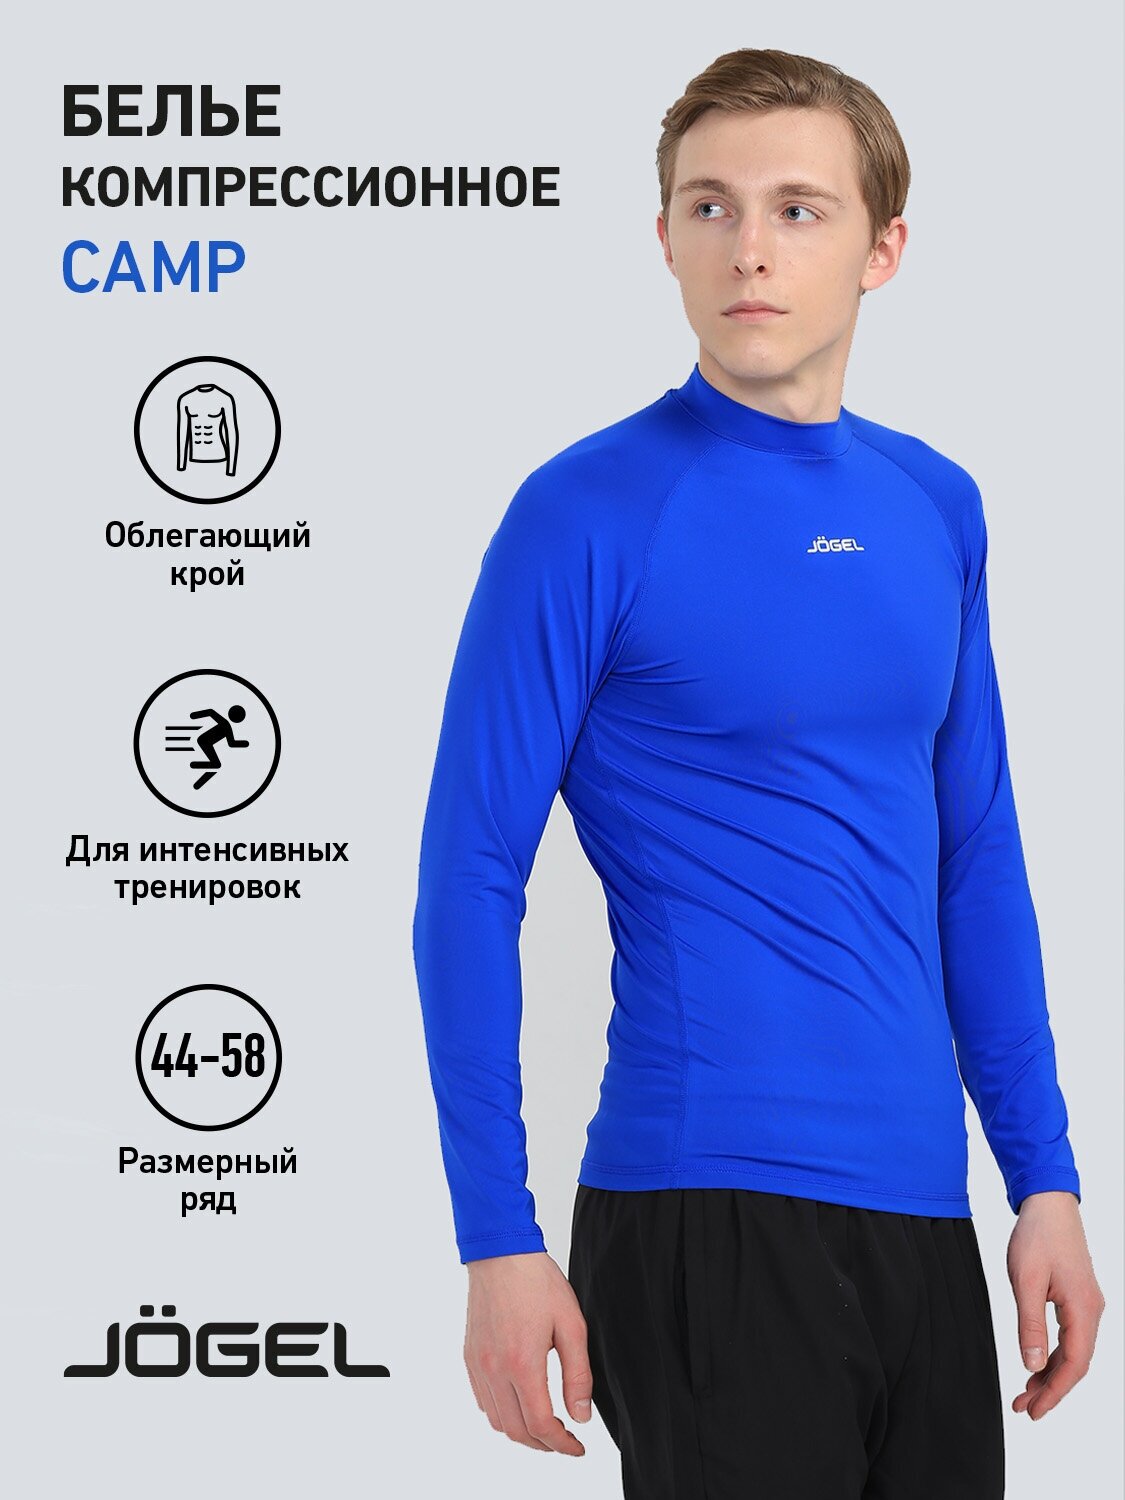 Лонгслив спортивный Jogel Белье футболка Jogel Camp Performdry Top УТ-00016266, размер M, синий, белый